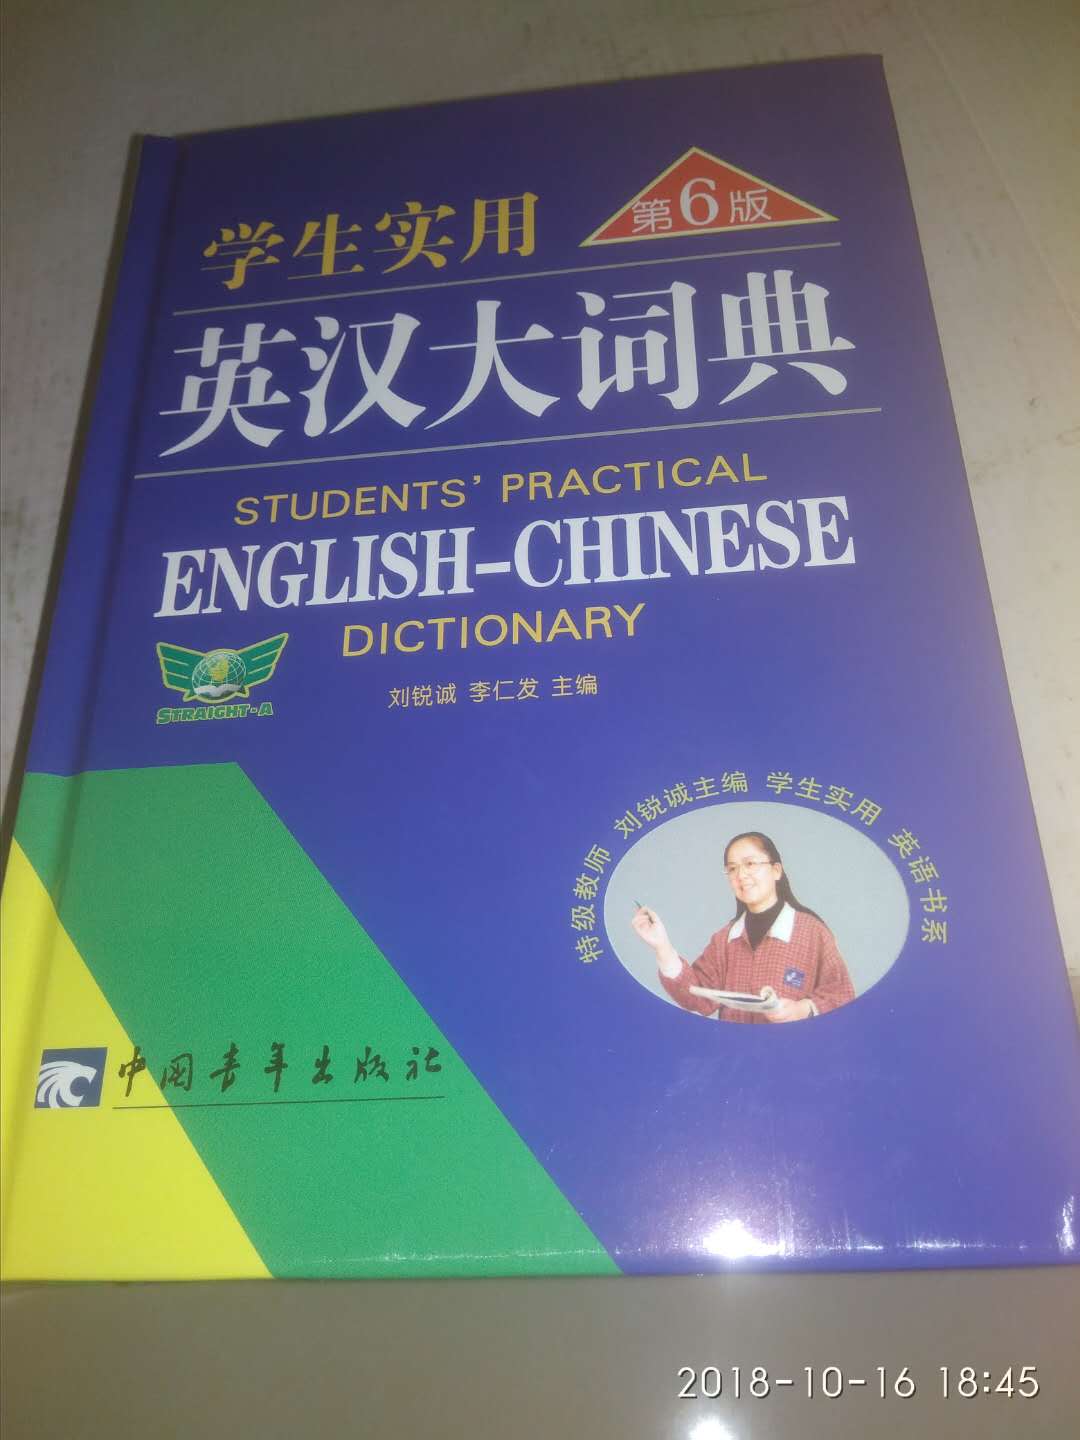 收到英汉大词典特别兴奋！在买比实体店便宜多了，绝对的正版。